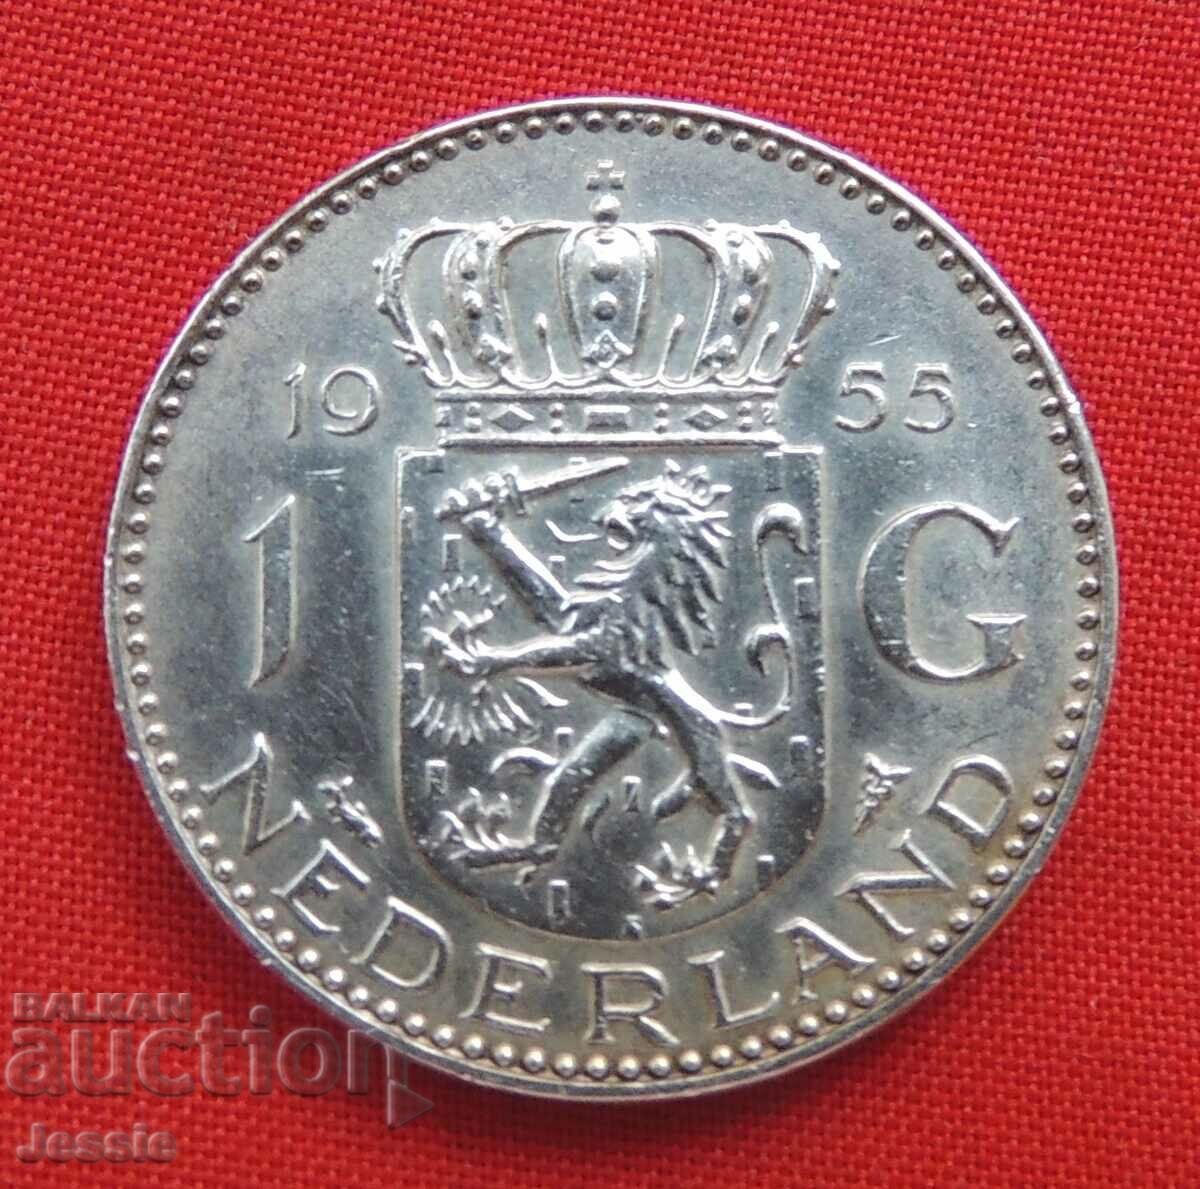 1 guilder 1955 Netherlands silver